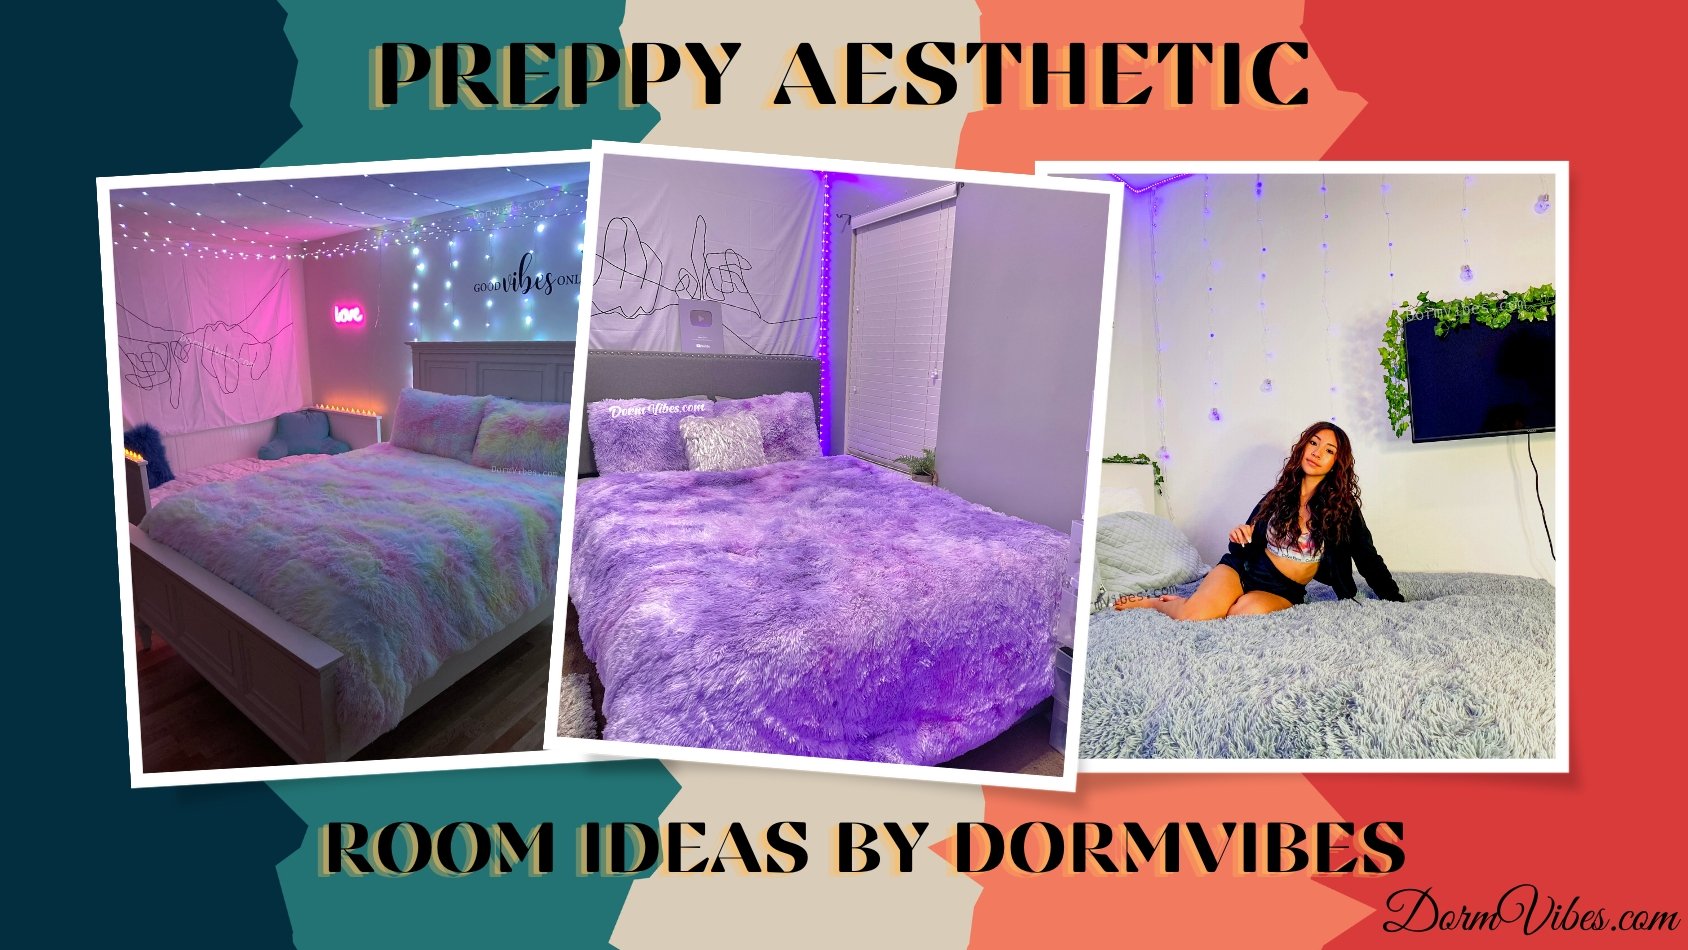 https://www.dormvibes.com/cdn/shop/articles/room-decor-ideas-for-a-preppy-aesthetic-dormvibes-242888_1688x.jpg?v=1685907442